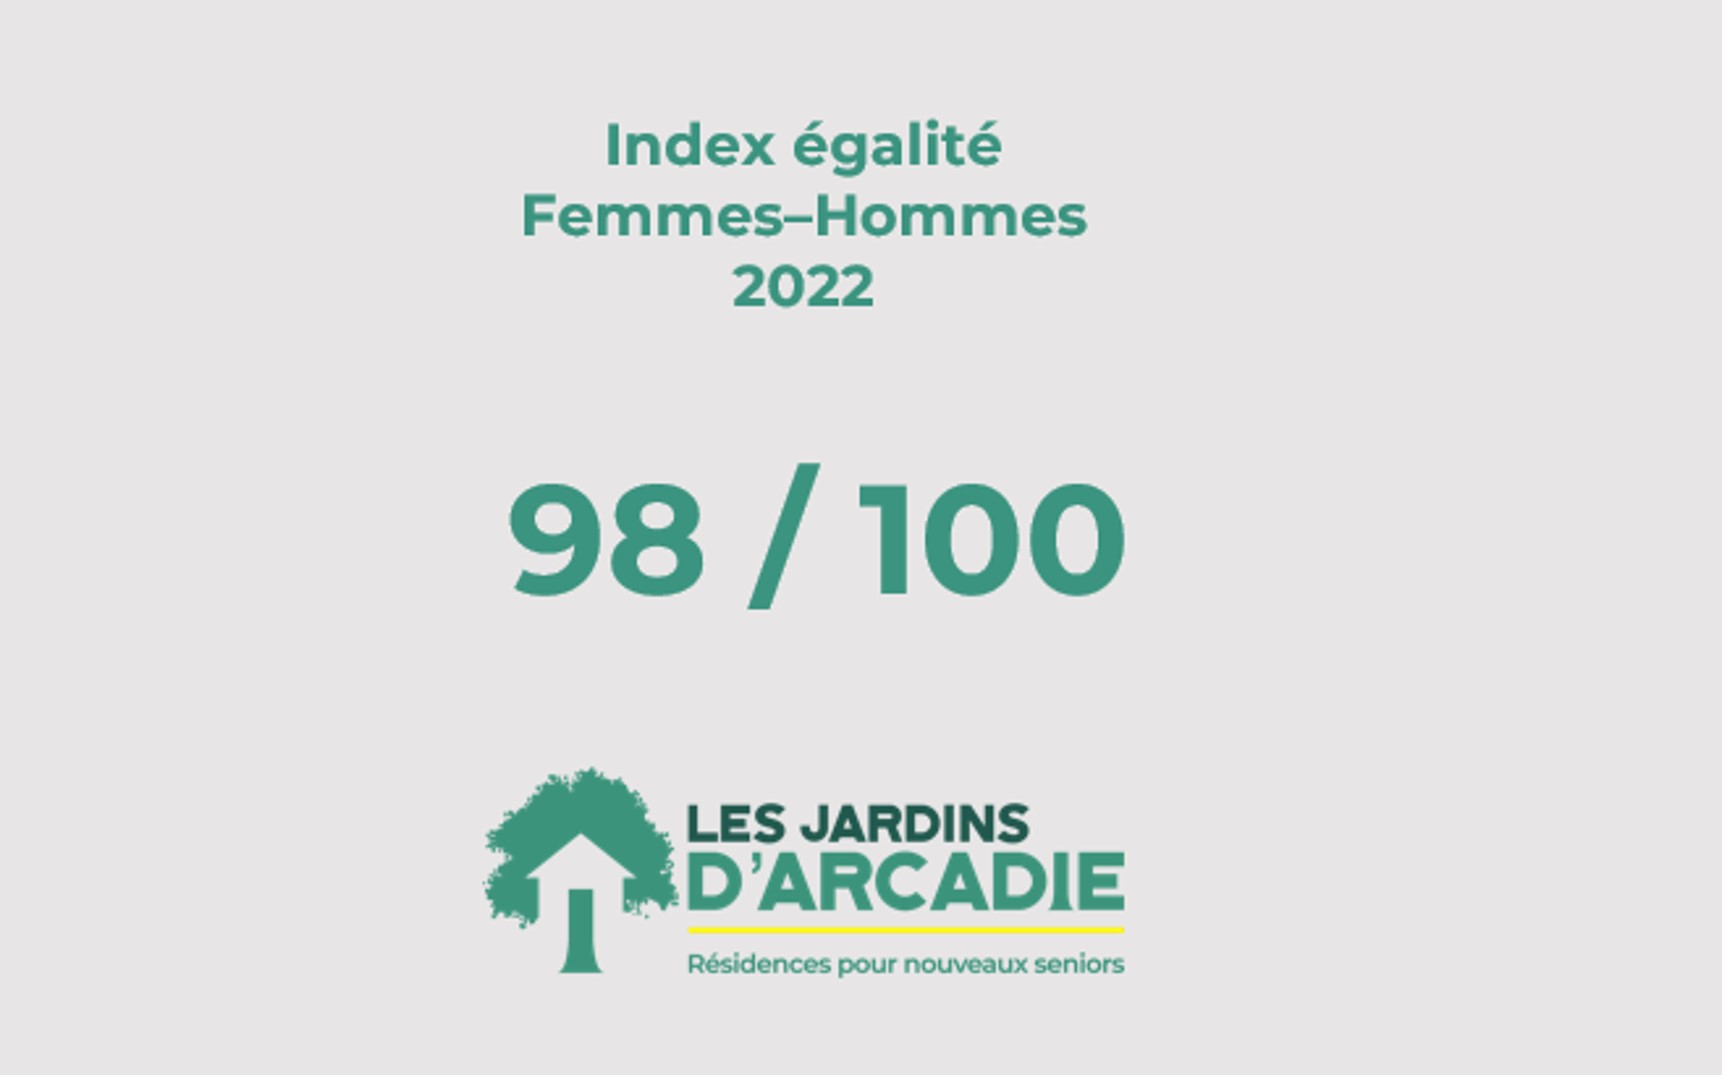 Les résidences seniors « Les Jardins d’Arcadie » obtiennent un index d’égalité Femmes-Hommes de 98/100 !